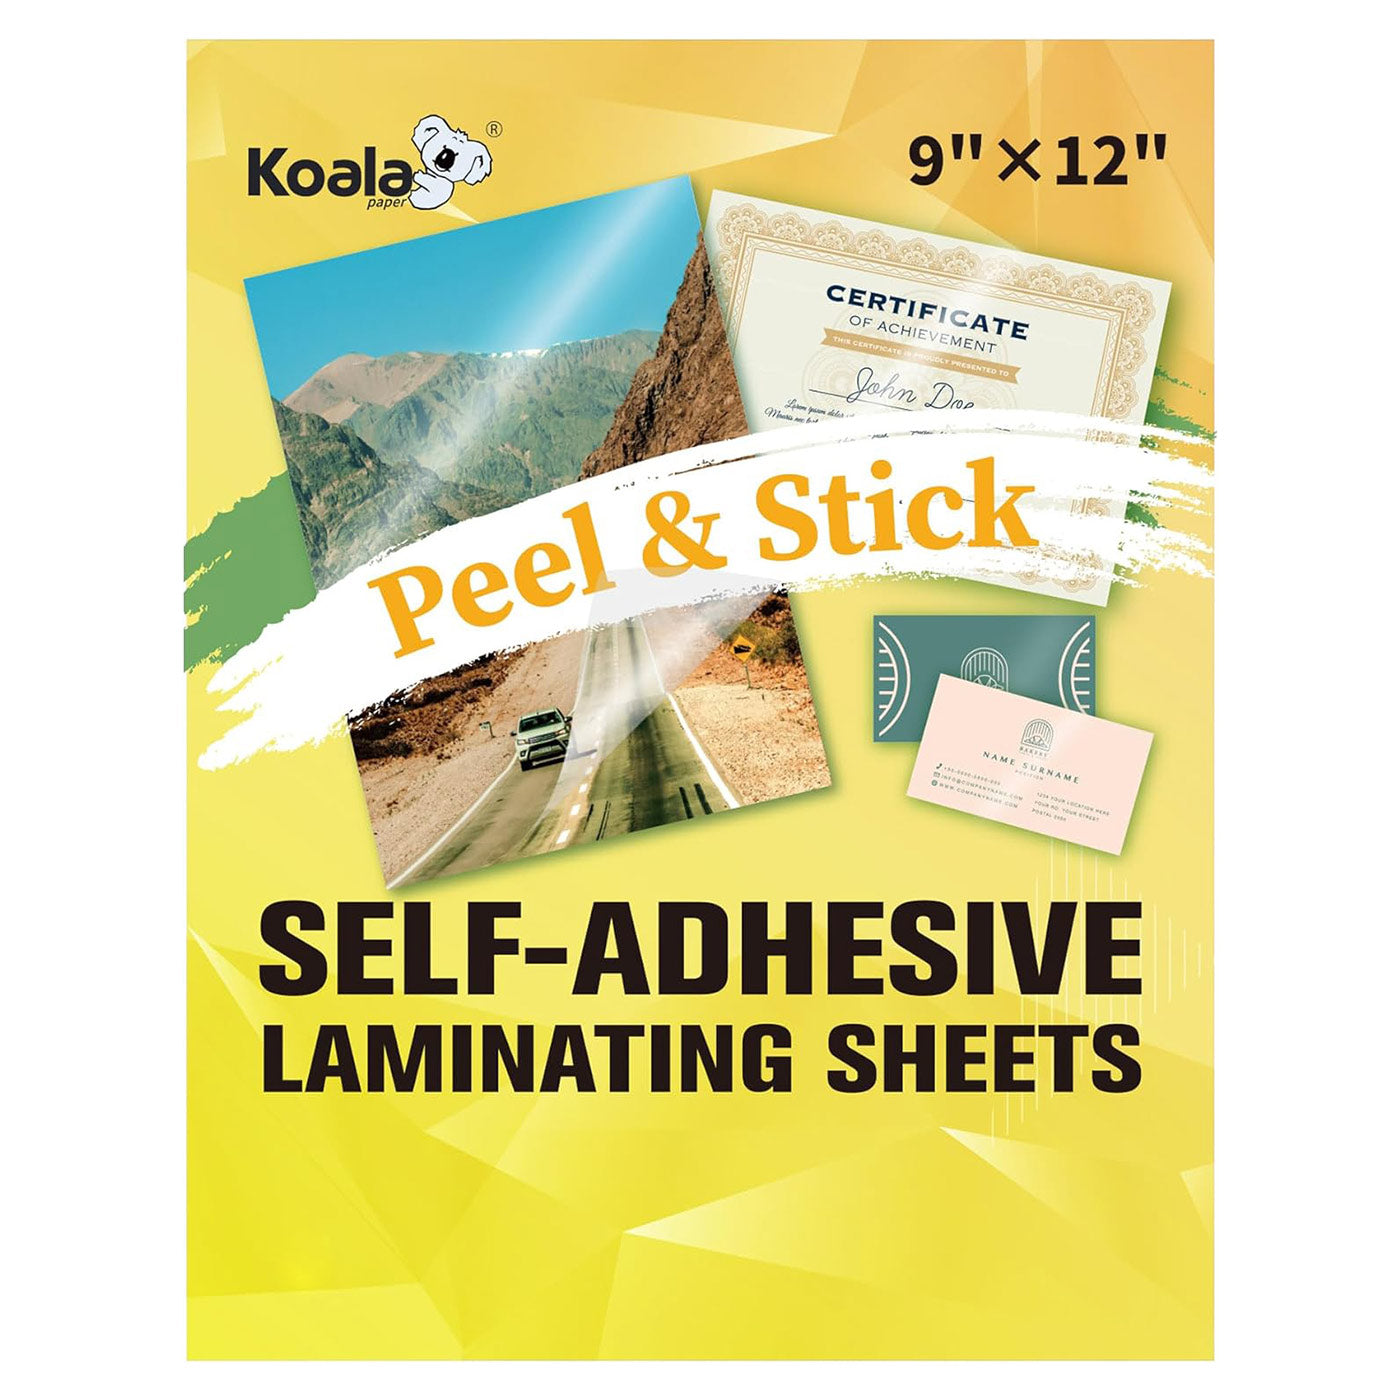 Koala Self Adhesive Laminating Sheets - 9 x 12 Inches - 20 Sheets